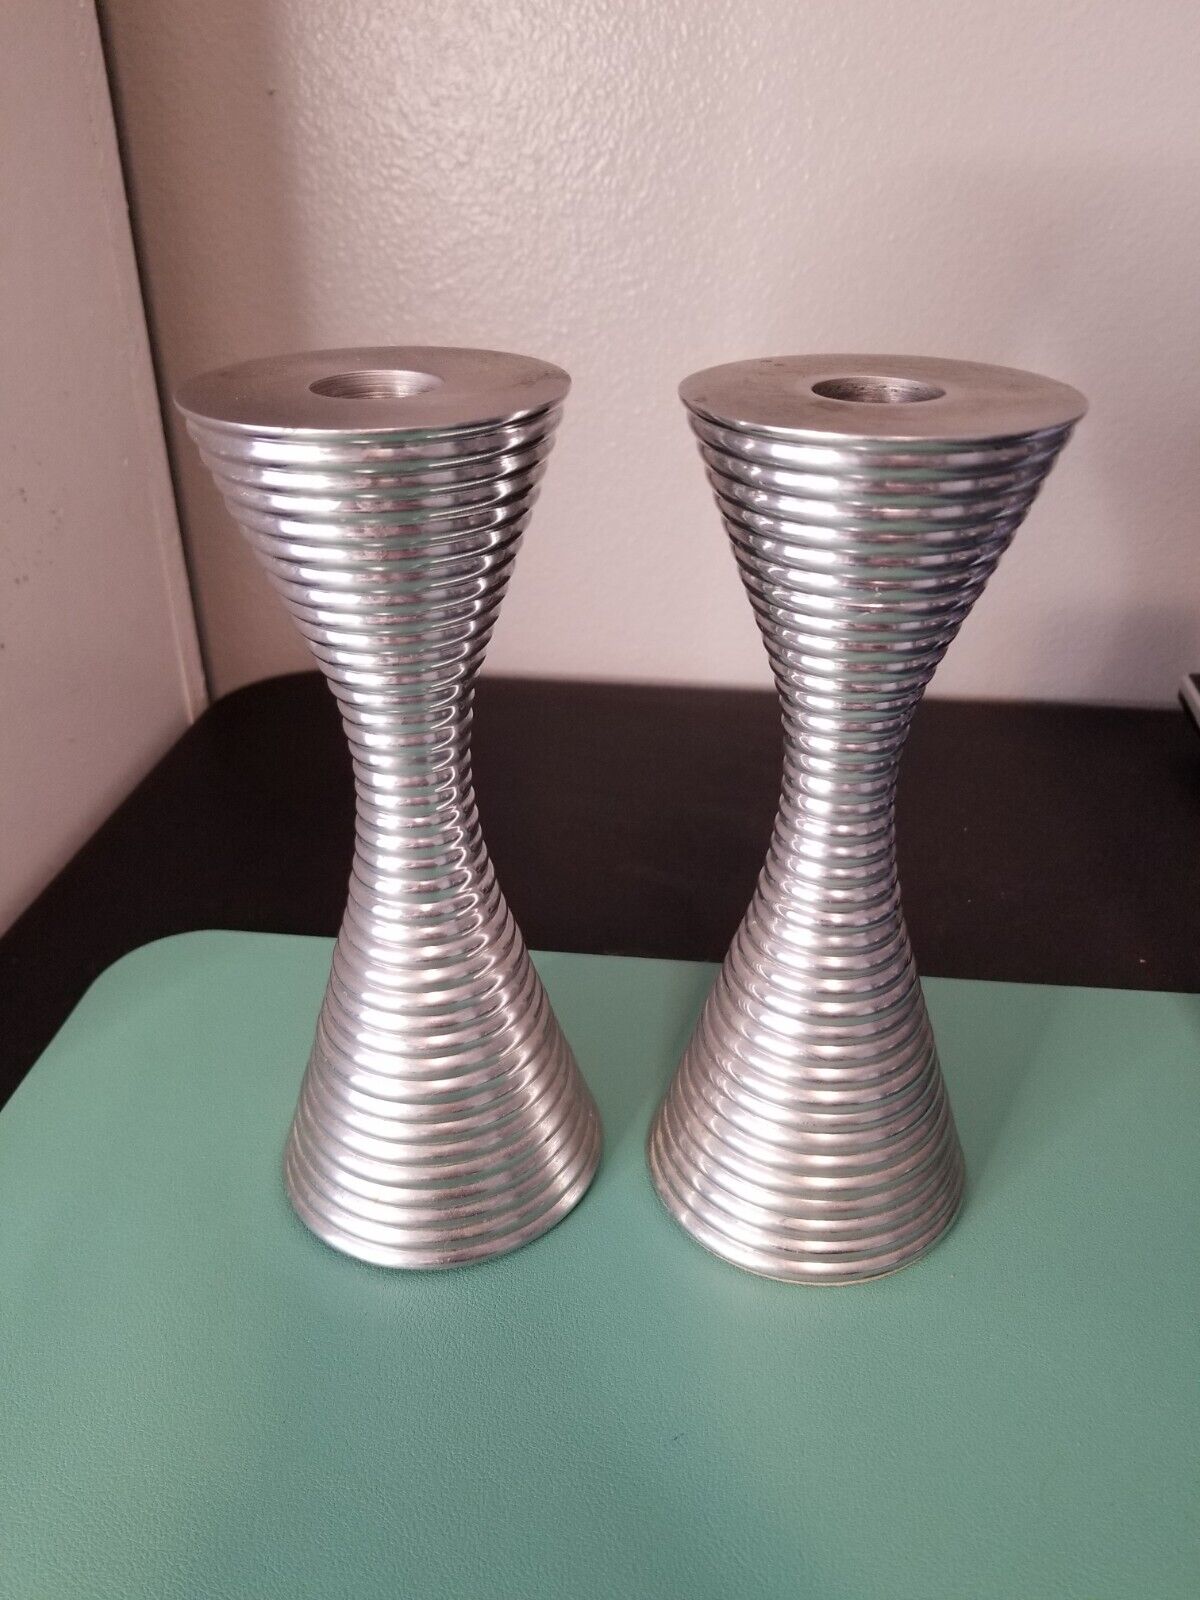 Pair of Partylite Orbit Aluminum Candlestick Holders